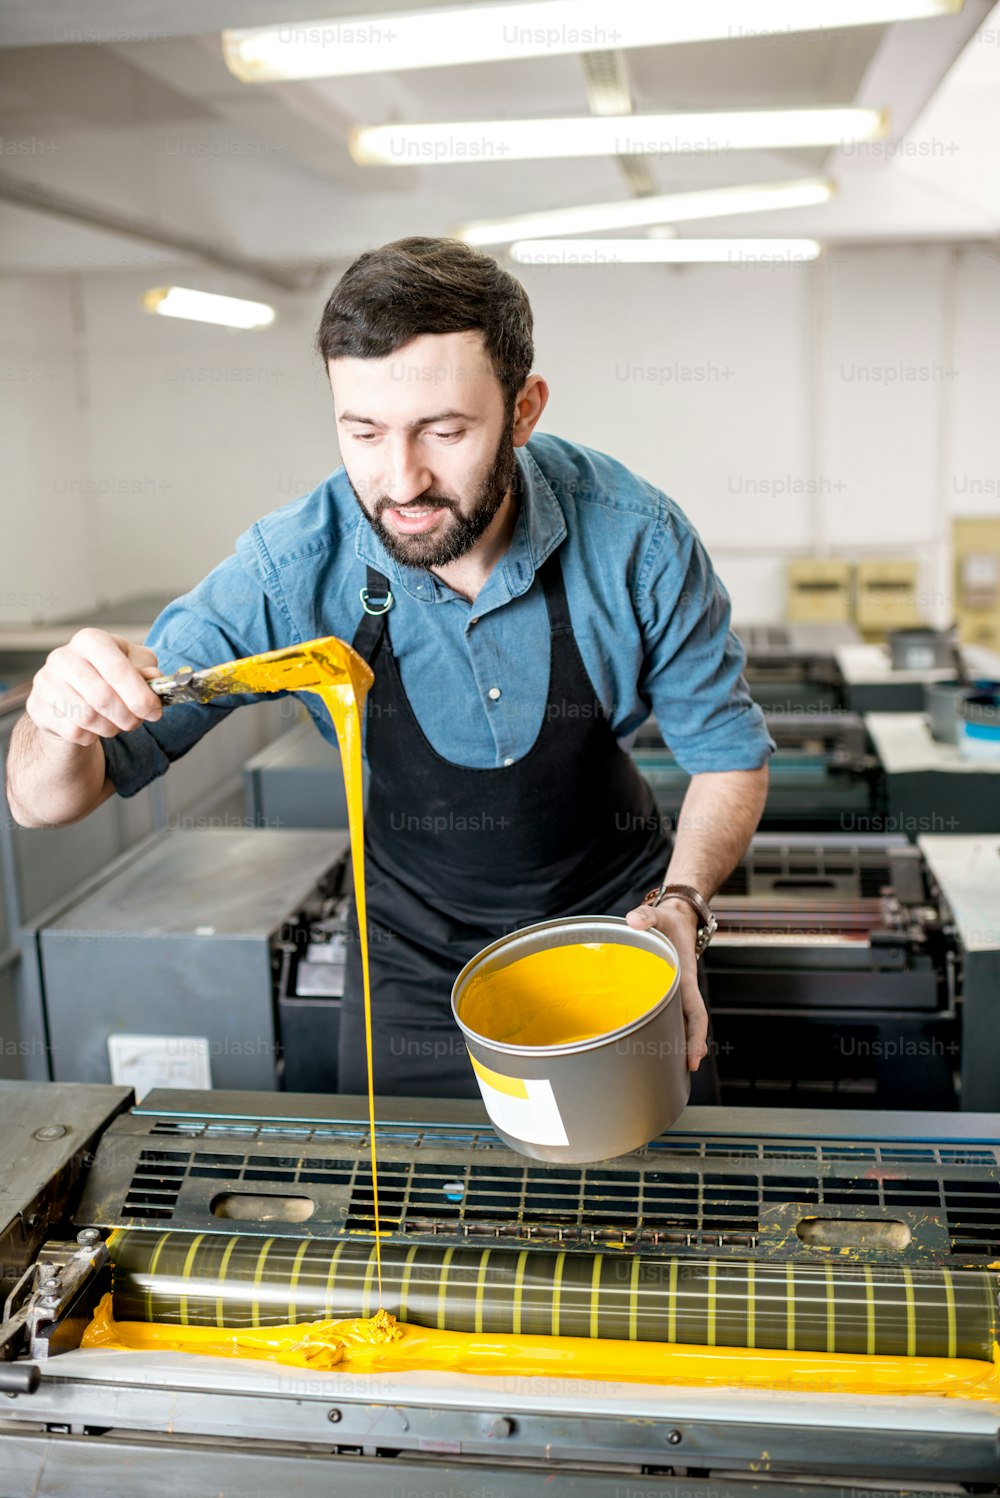 타이포그래퍼가 인쇄 제조 공정에서 오프셋 기계에 노란색 페인트를 채우고 있다